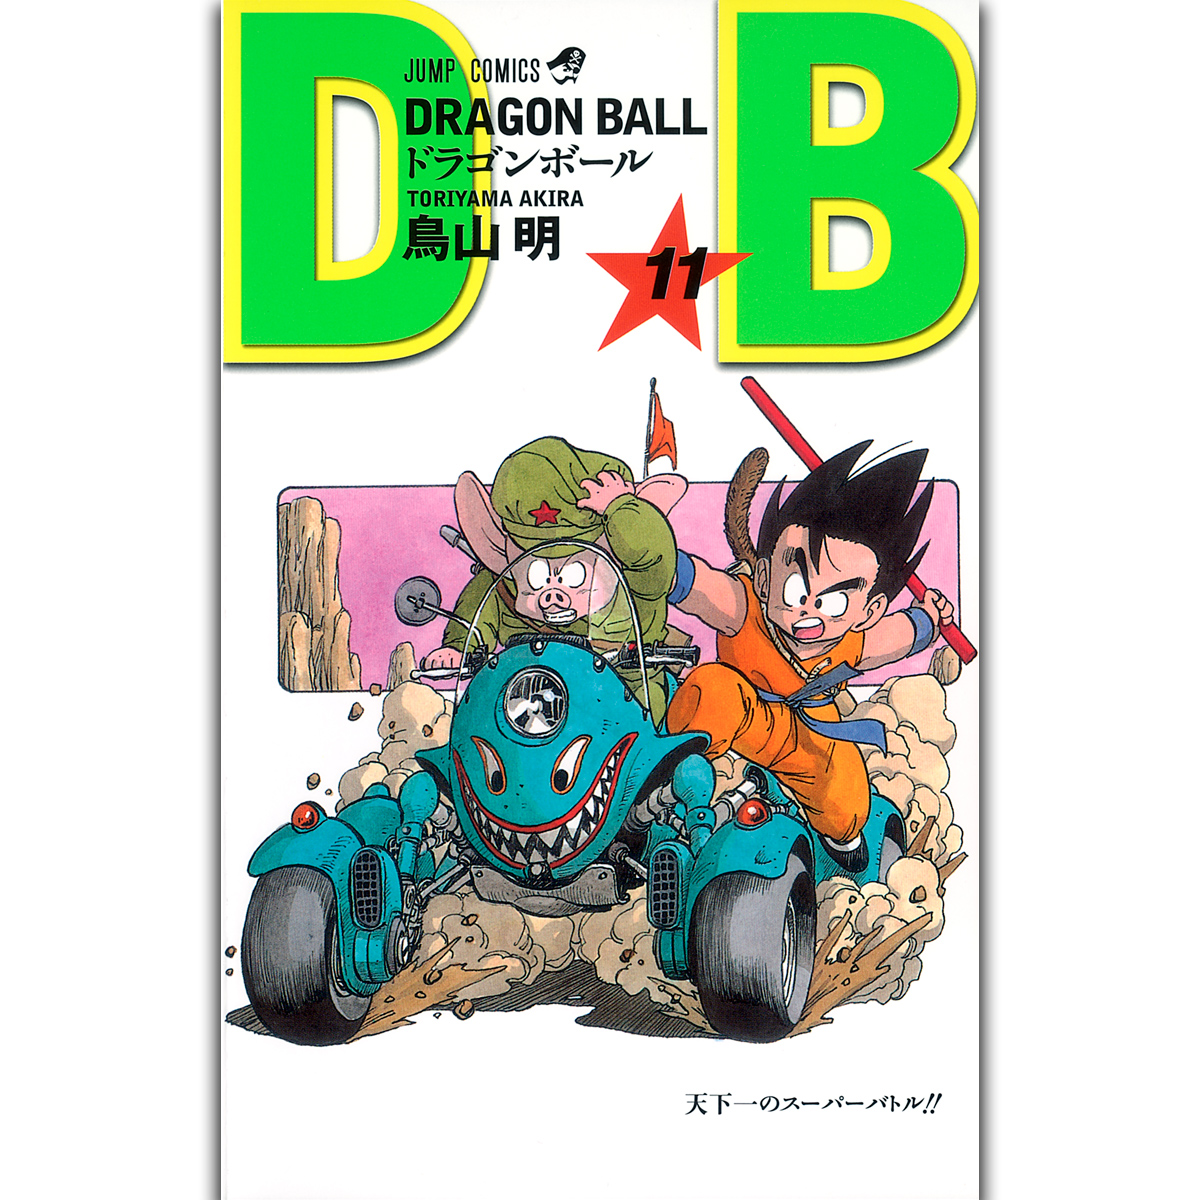 【公式】ドラゴンボールオフィシャルサイト | DRAGON BALL